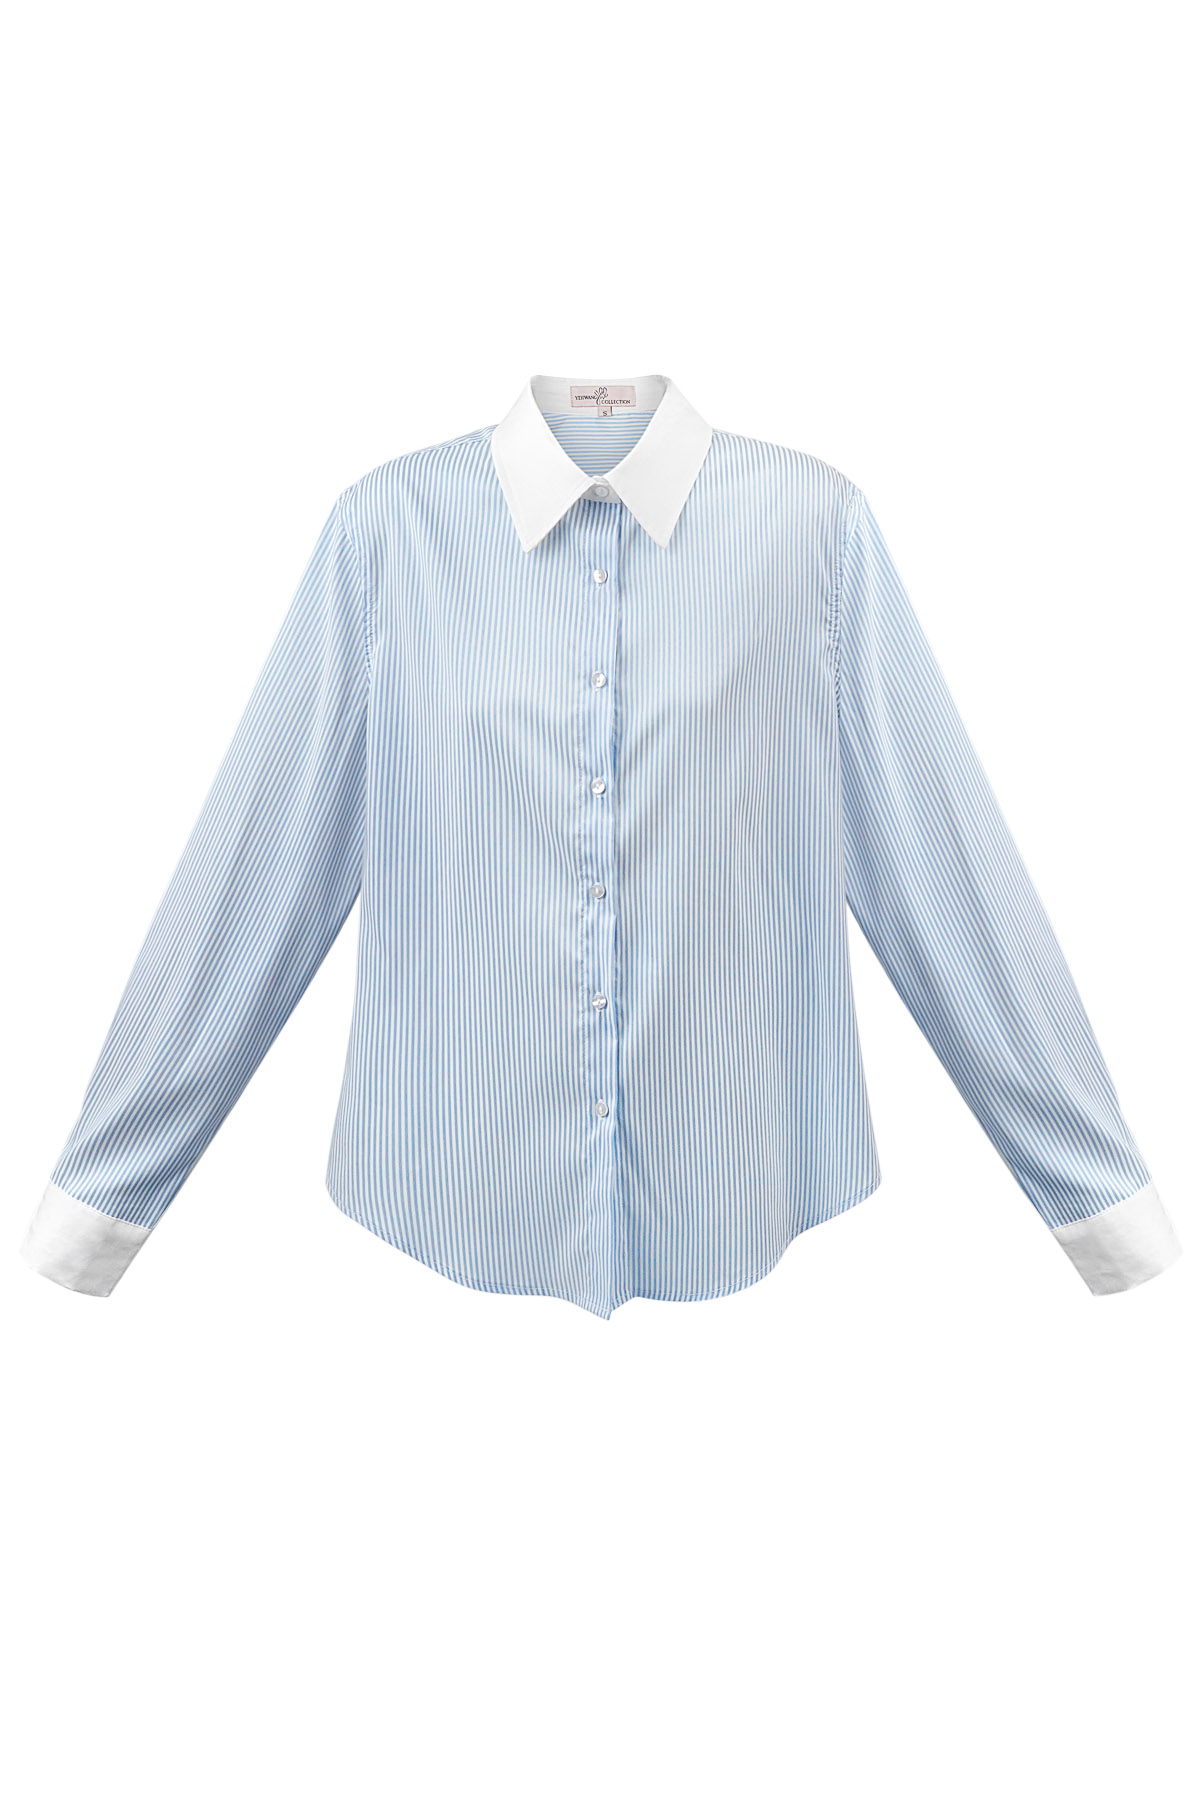 Basic blouse stripes - white/blue 